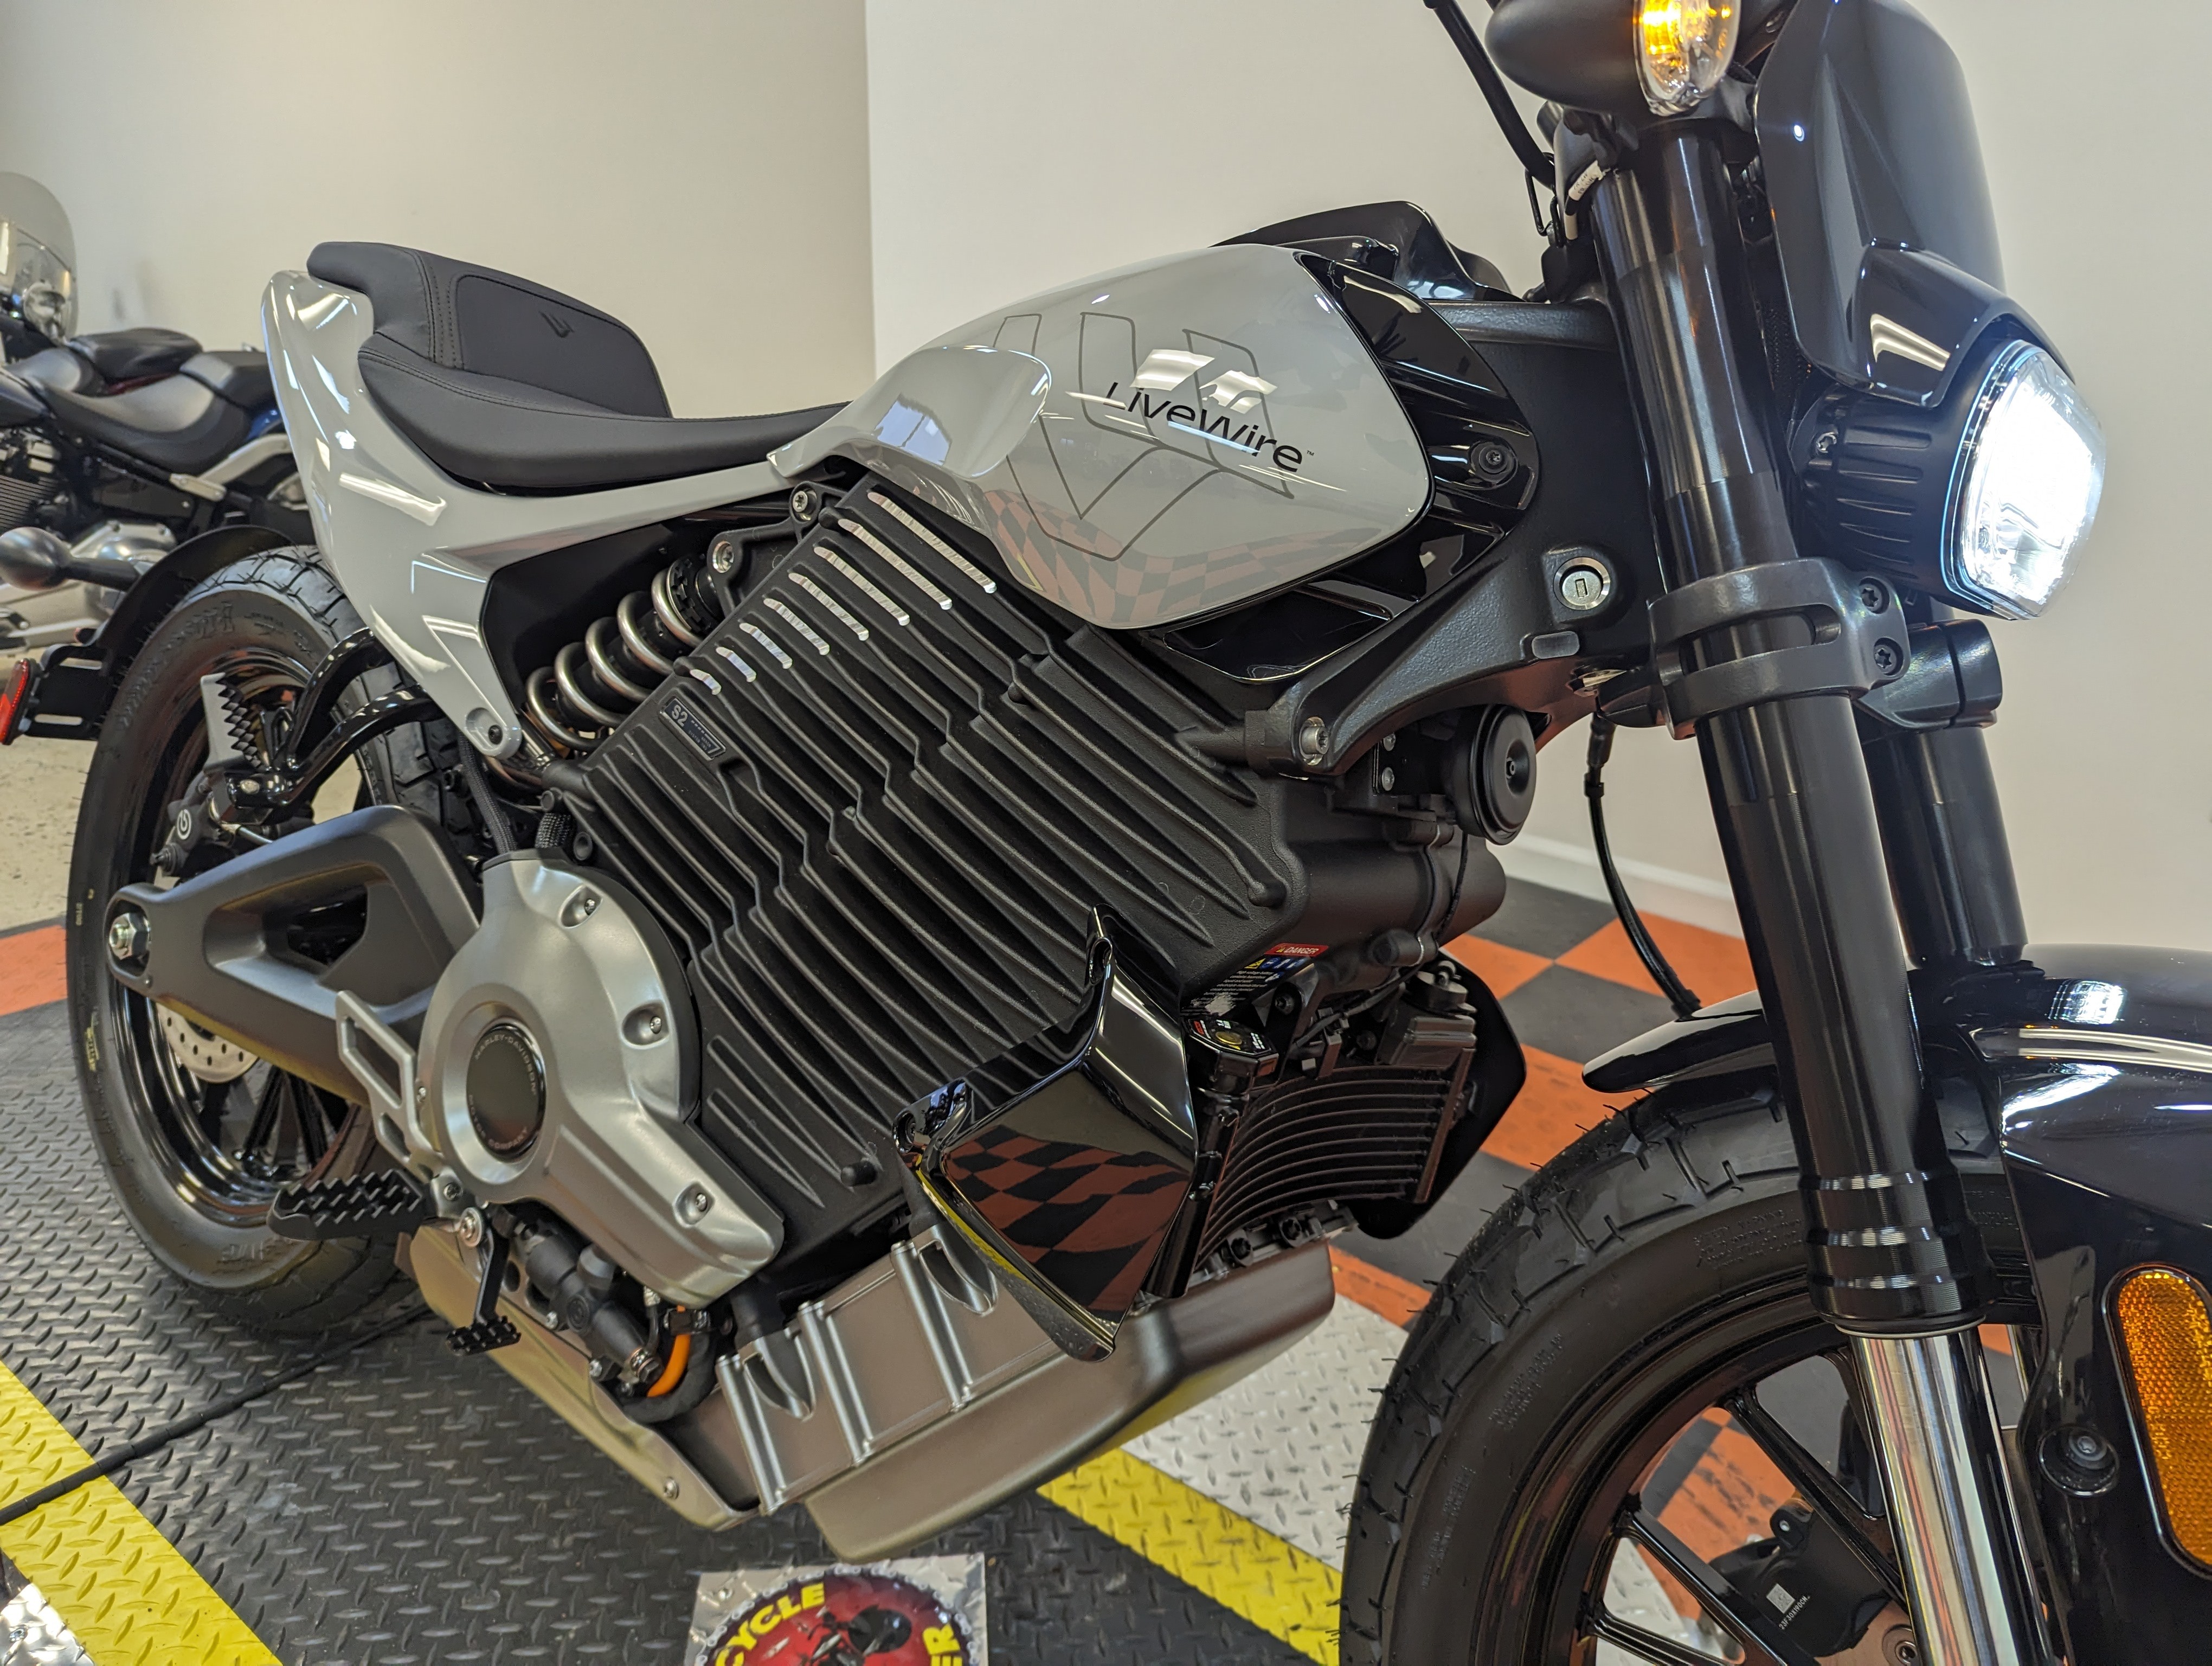 S2 Del Mar electric motorcycle